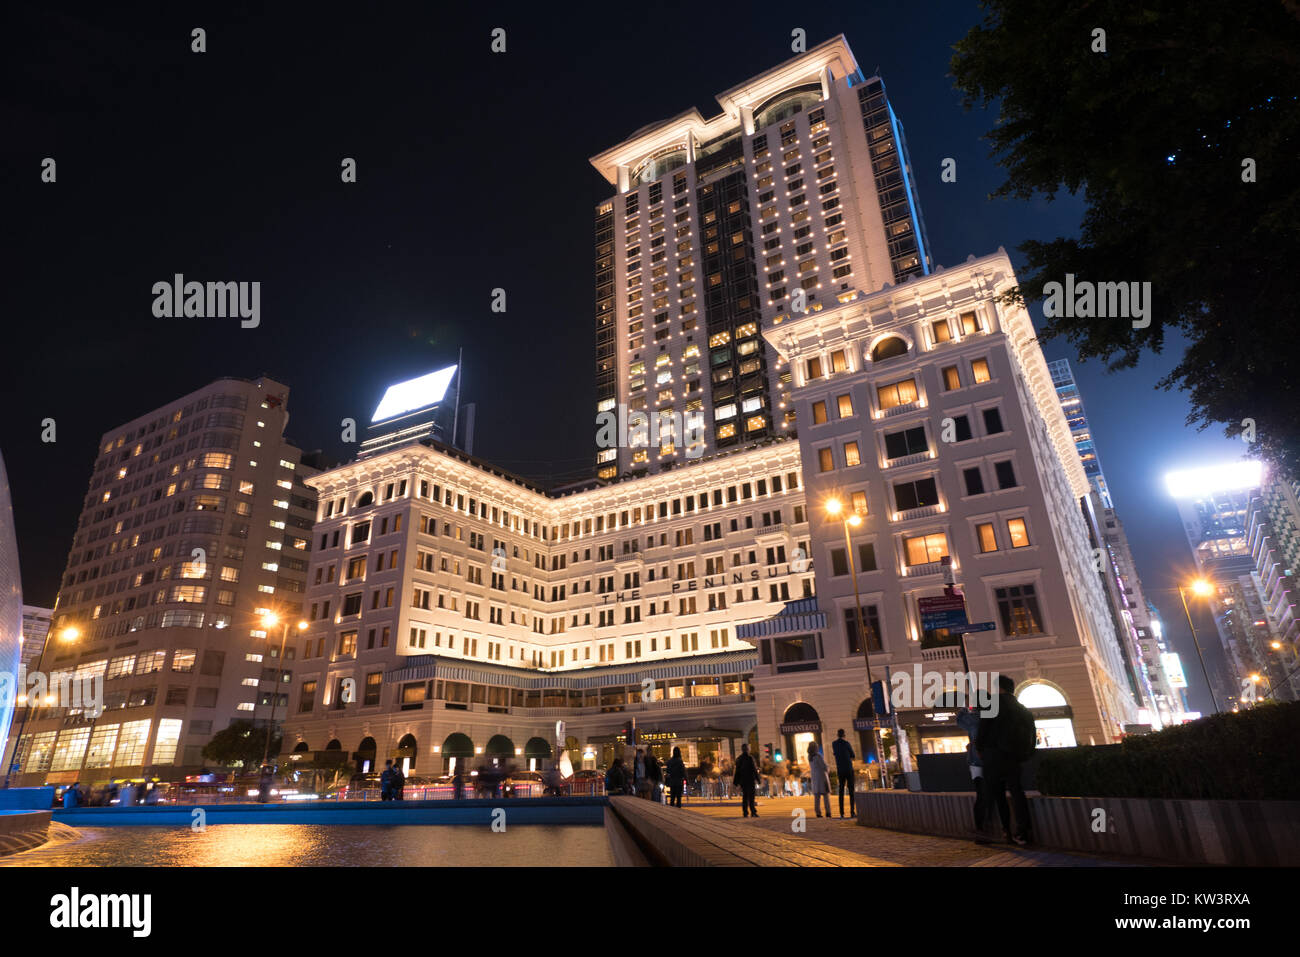 Peninsula hotel hong kong at night Banque D'Images